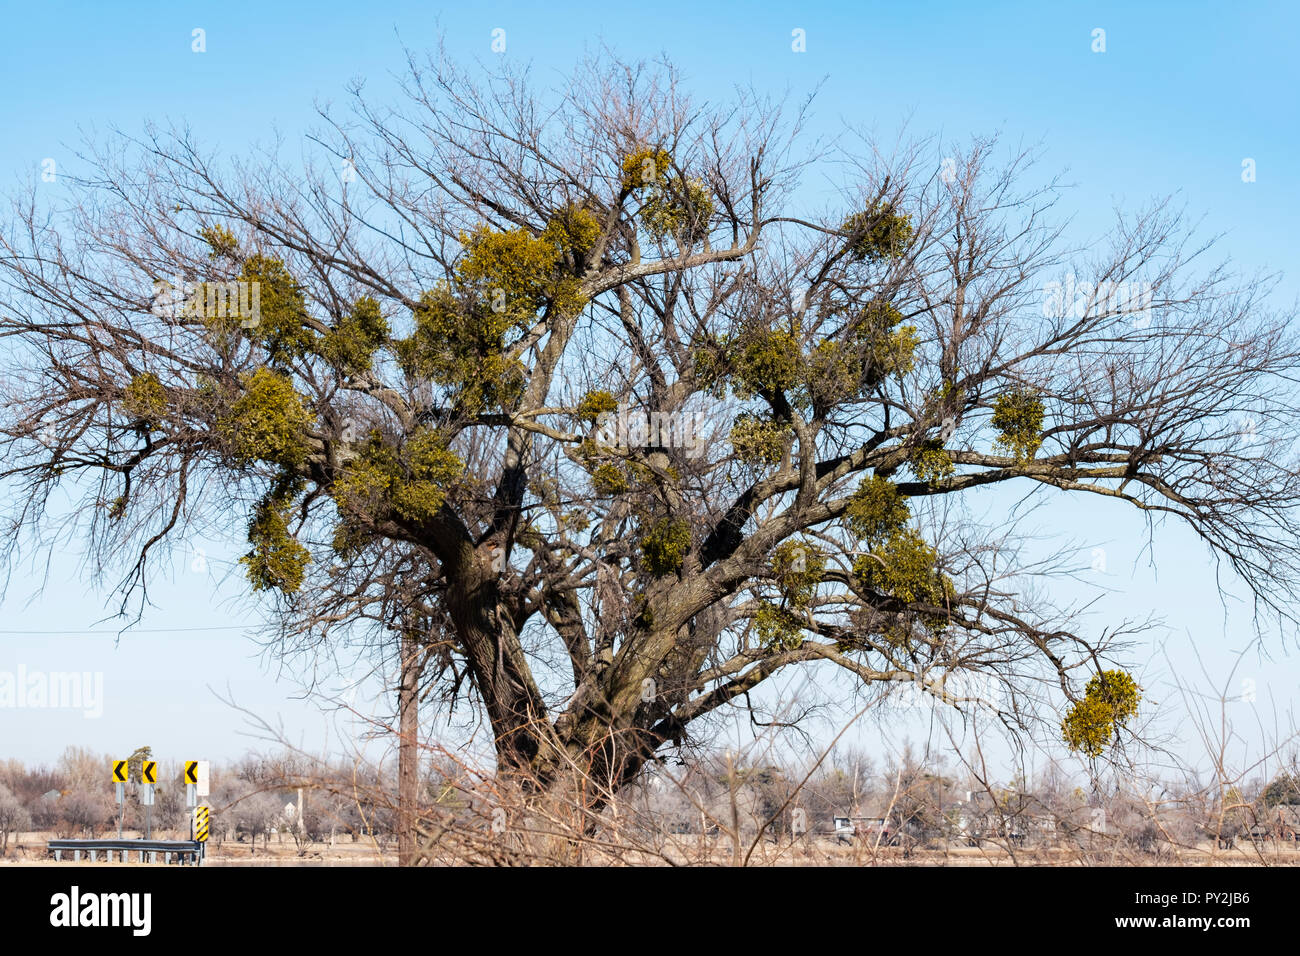 El muérdago, una planta hemiparastic obligan en árbol hospedero en invierno. Estado de Oklahoma diario emblema floral. Oklahoma, Estados Unidos. Foto de stock